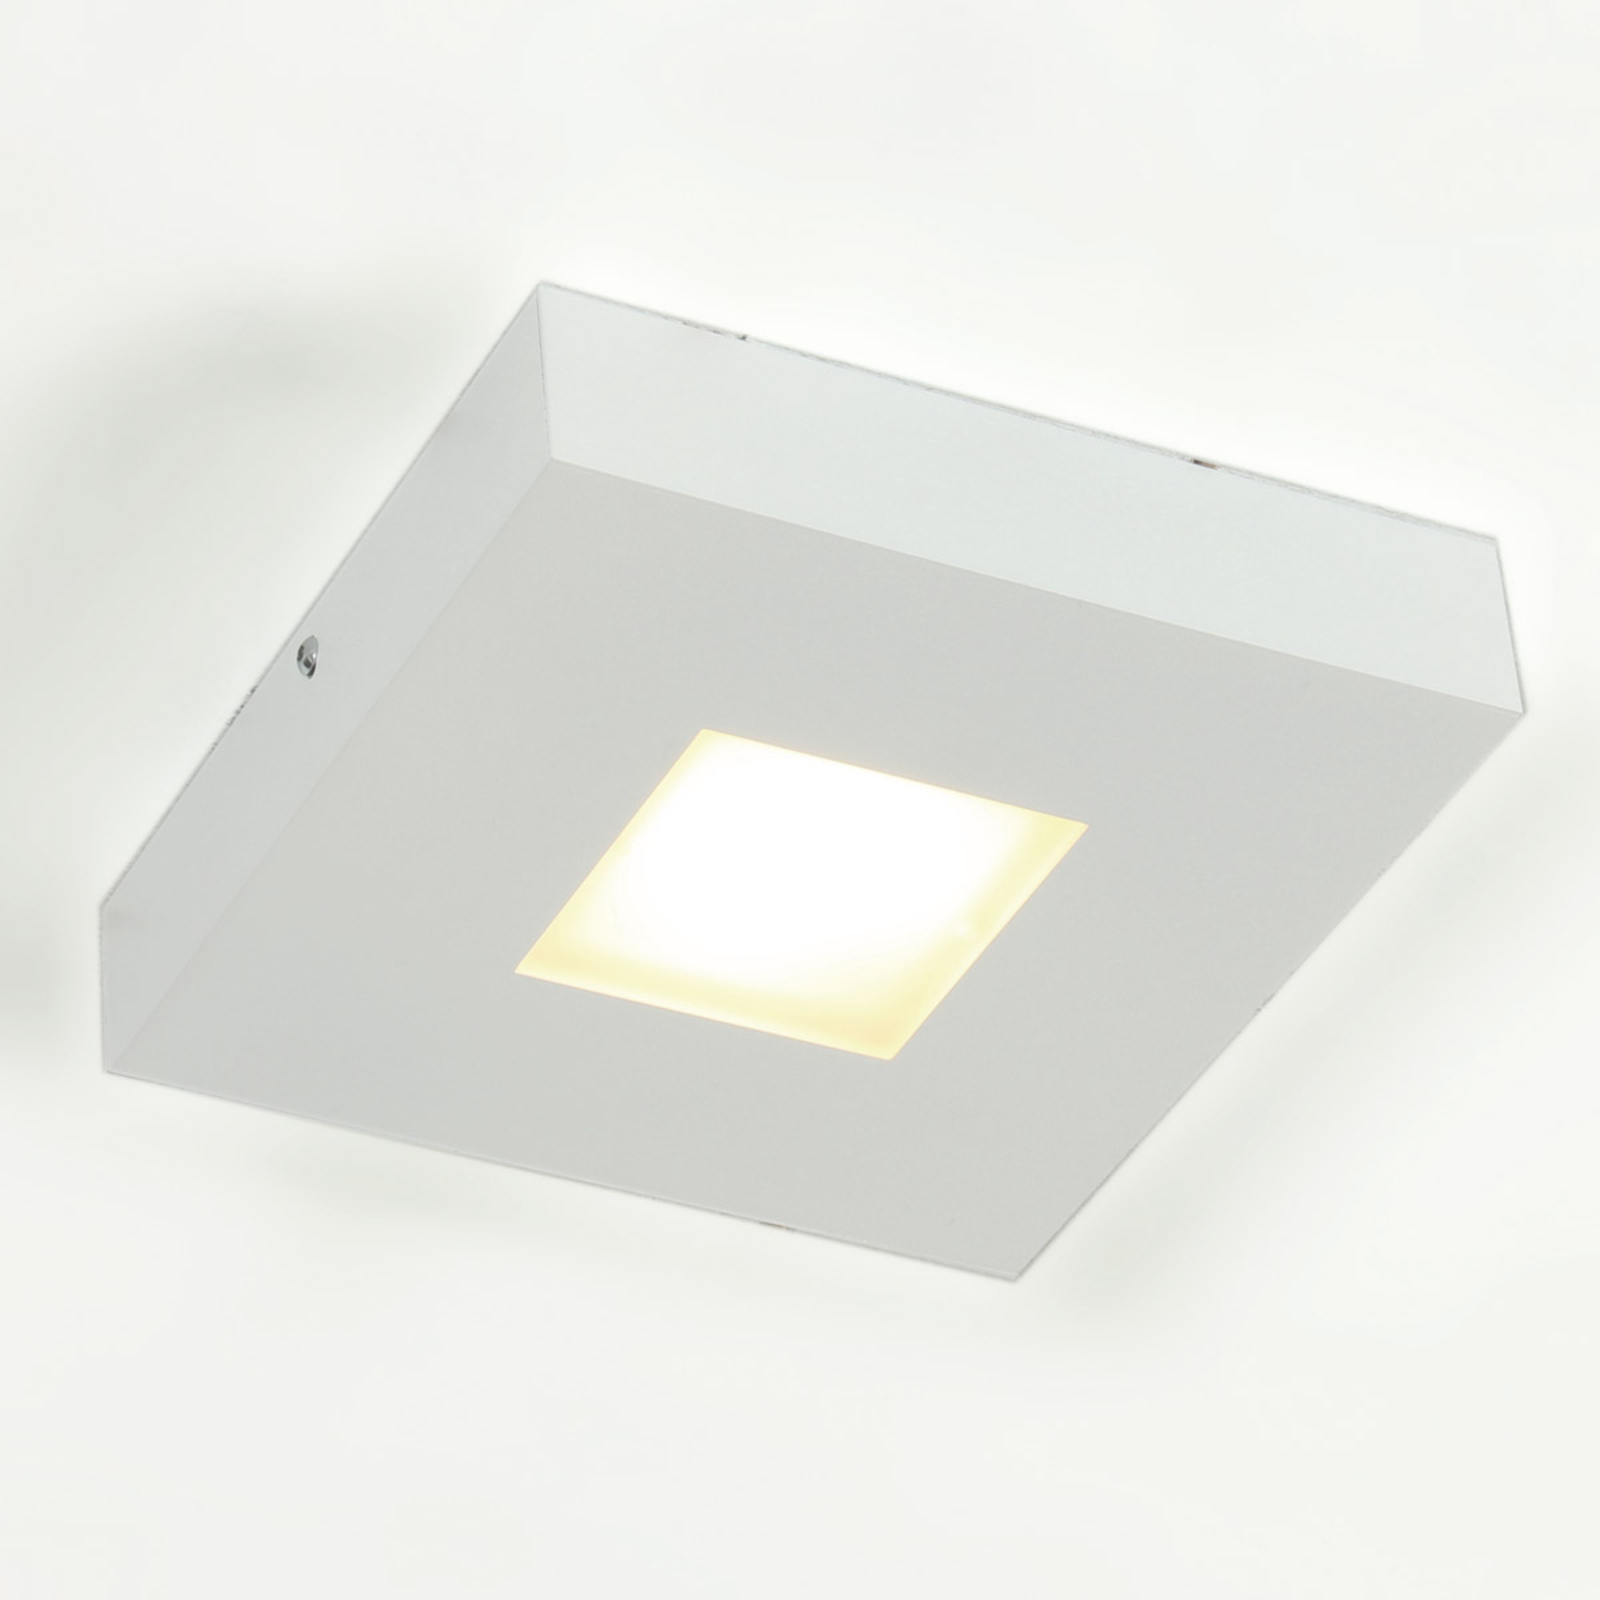 LED-taklampe Cubus i høy kvalitet, hvit